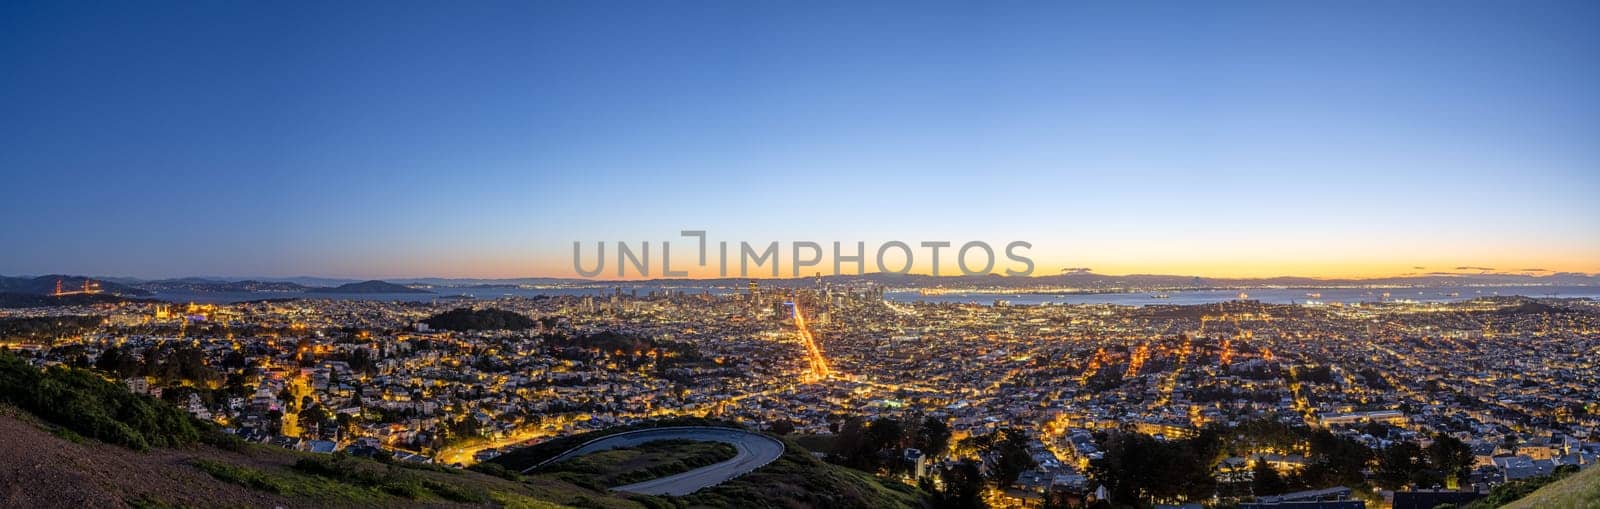 Panorama of San Francisco before sunrise by elxeneize